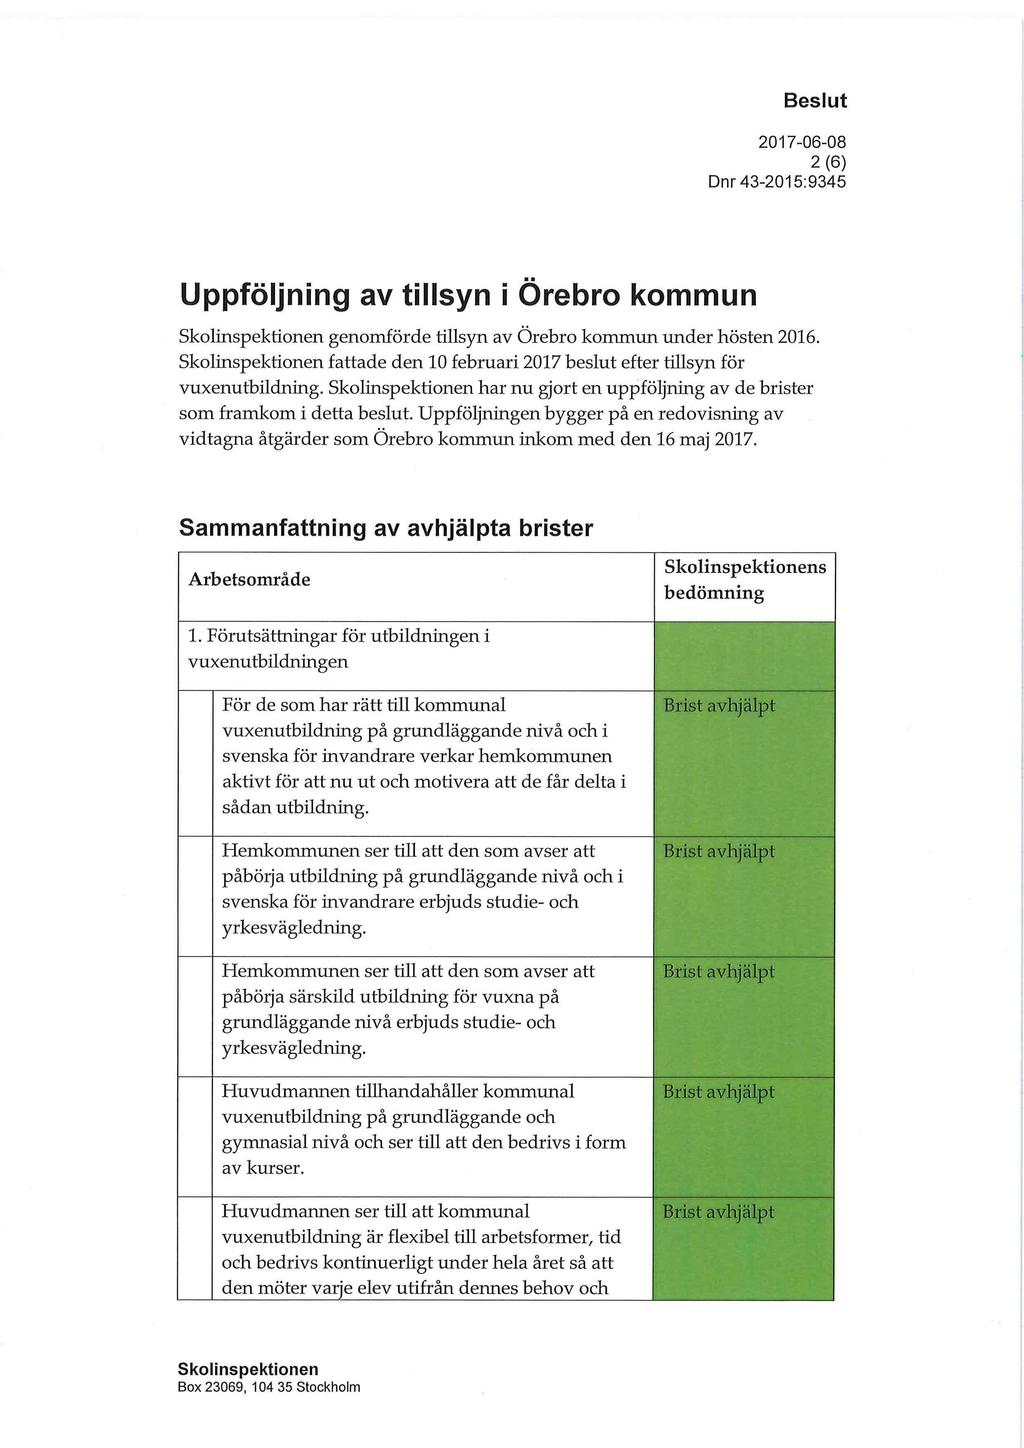 2 (6) Uppföljning av tillsyn i Örebro kommun genomförde tillsyn av Örebro kommun under hösten 2016. fattade den 10 februari 2017 beslut efter tillsyn för vuxenutbildning.